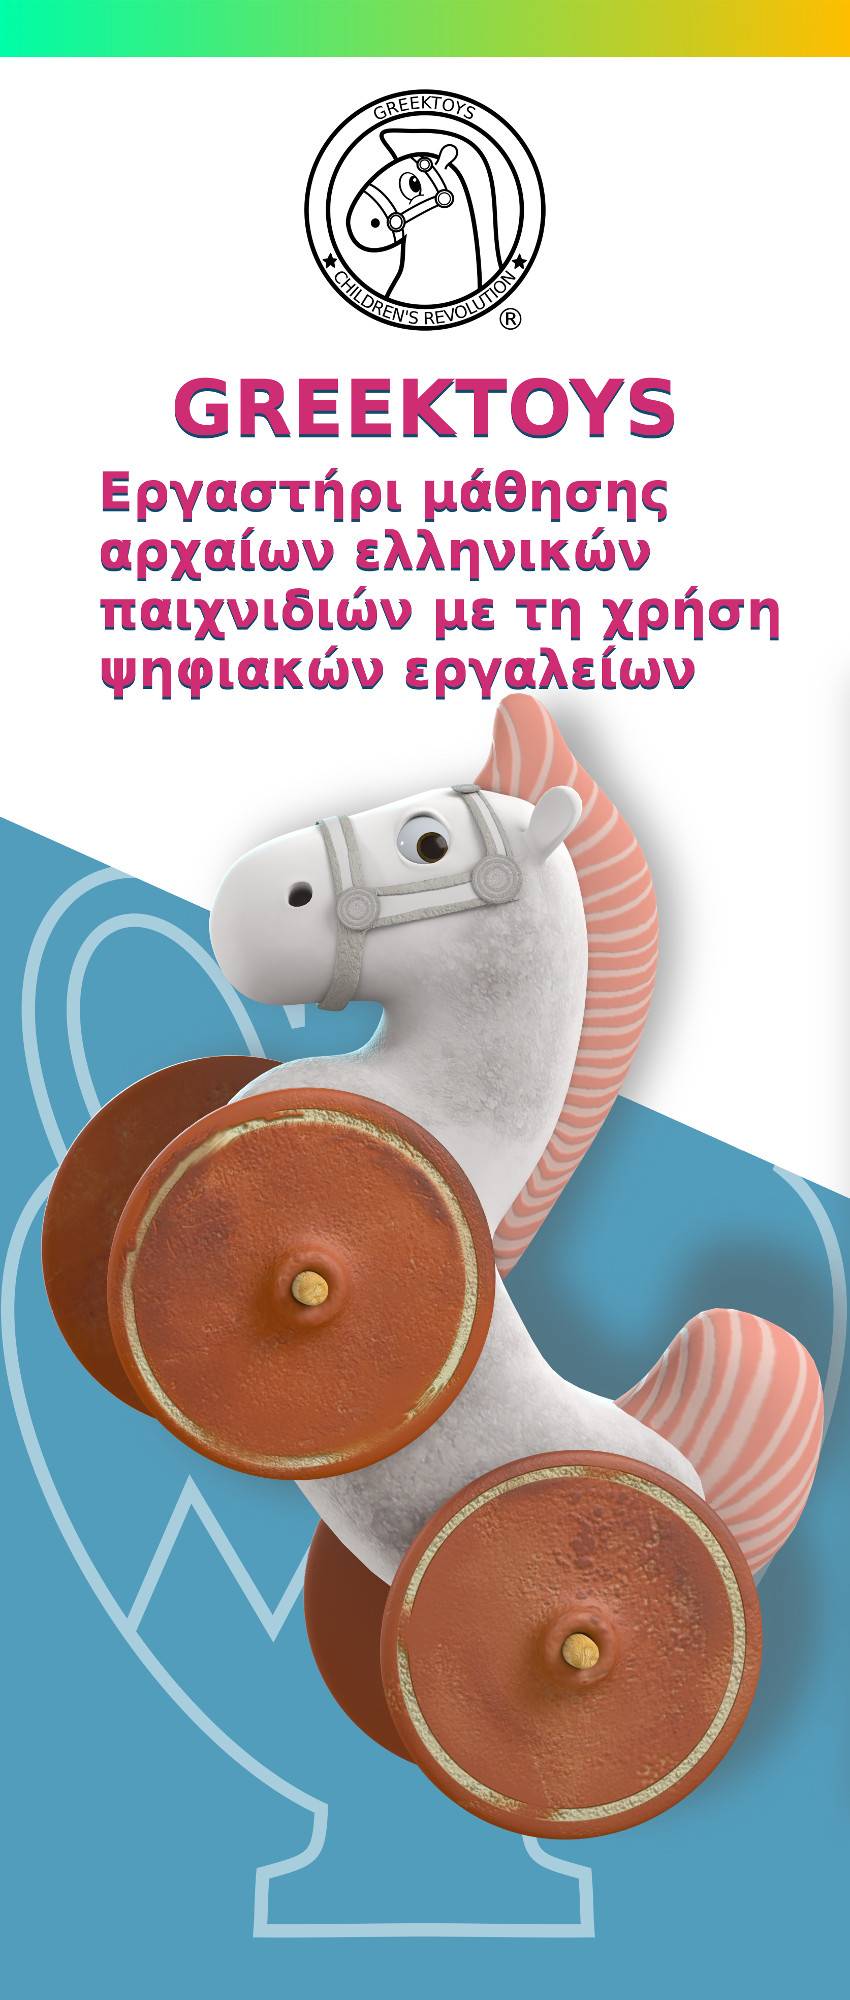 Εργαστήρι μάθησης αρχαίων ελληνικών παιχνιδιών με χρήση ψηφιακών εργαλείων: Greektoys Children’s Revolution®  (23-24 Φεβρουαρίου 2019) Λογότυπο